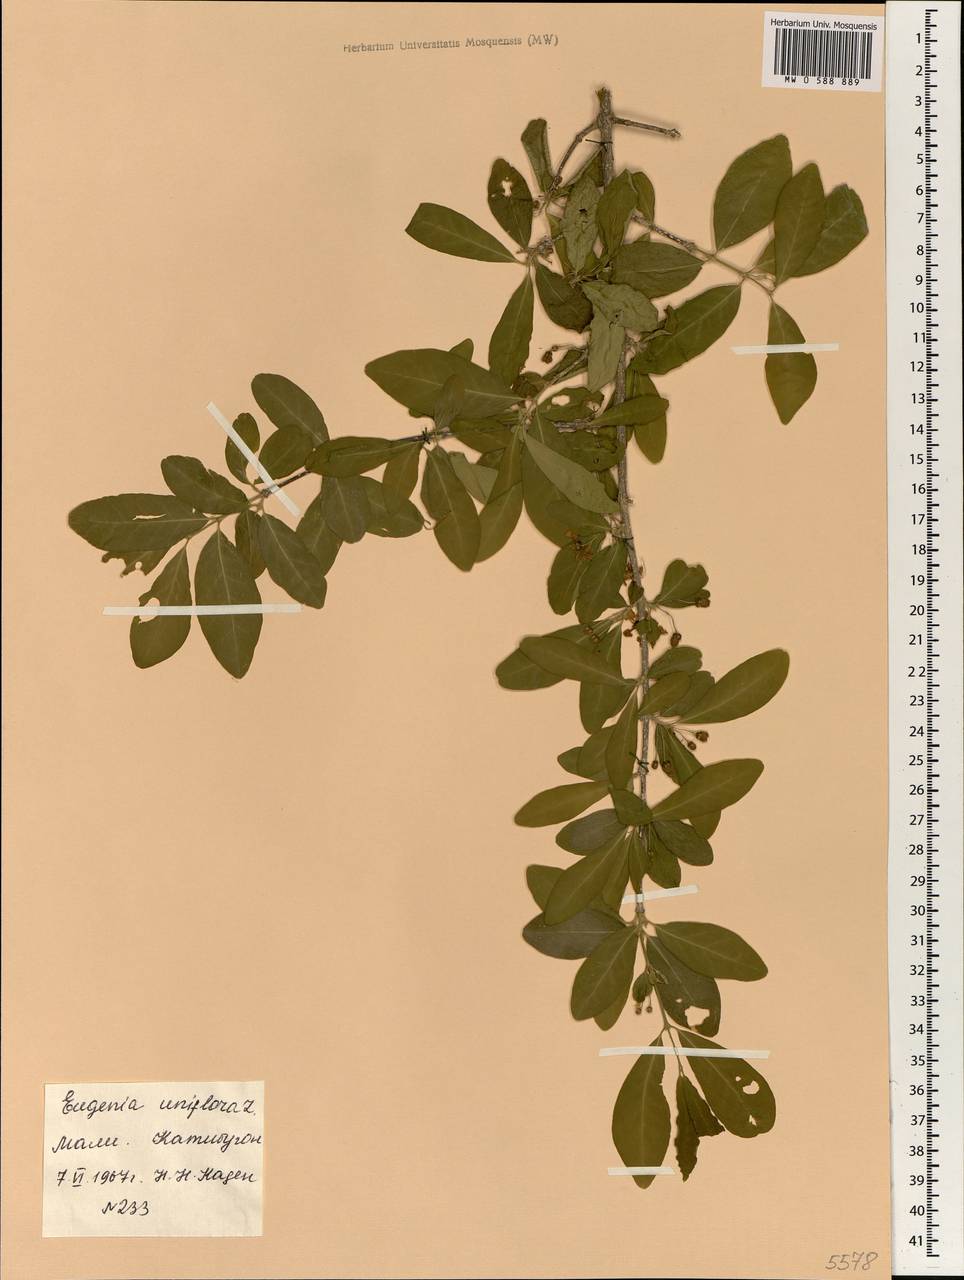 Eugenia uniflora L., Africa (AFR) (Mali)